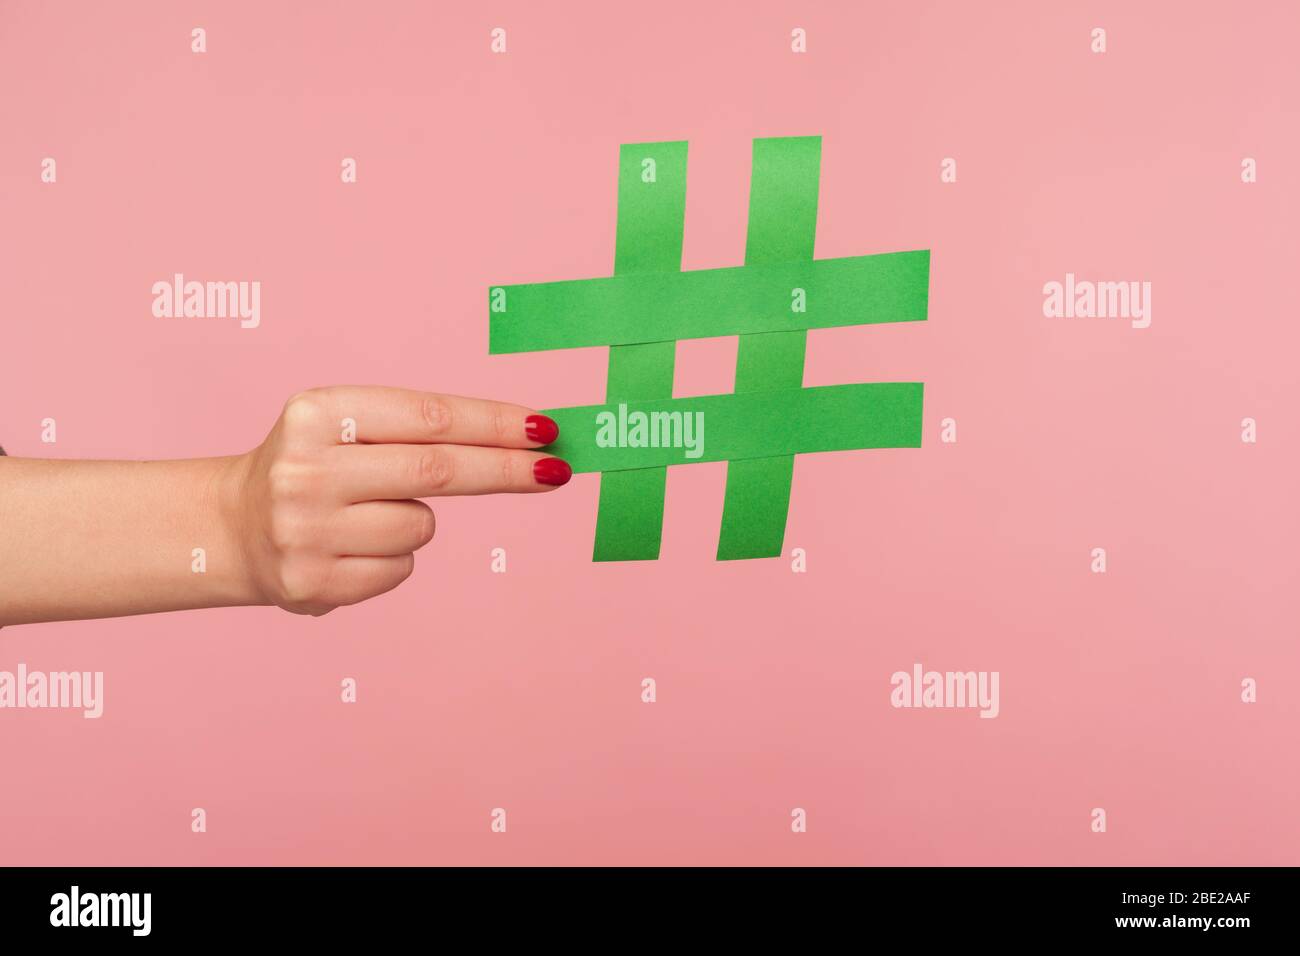 Blog-Marketing, Social Media Trends. Nahaufnahme der weiblichen Hand mit grünen Hashtag Zeichen, Teilen getaggte Nachricht, berühmte Internet-Post, Förderung Web-Co Stockfoto